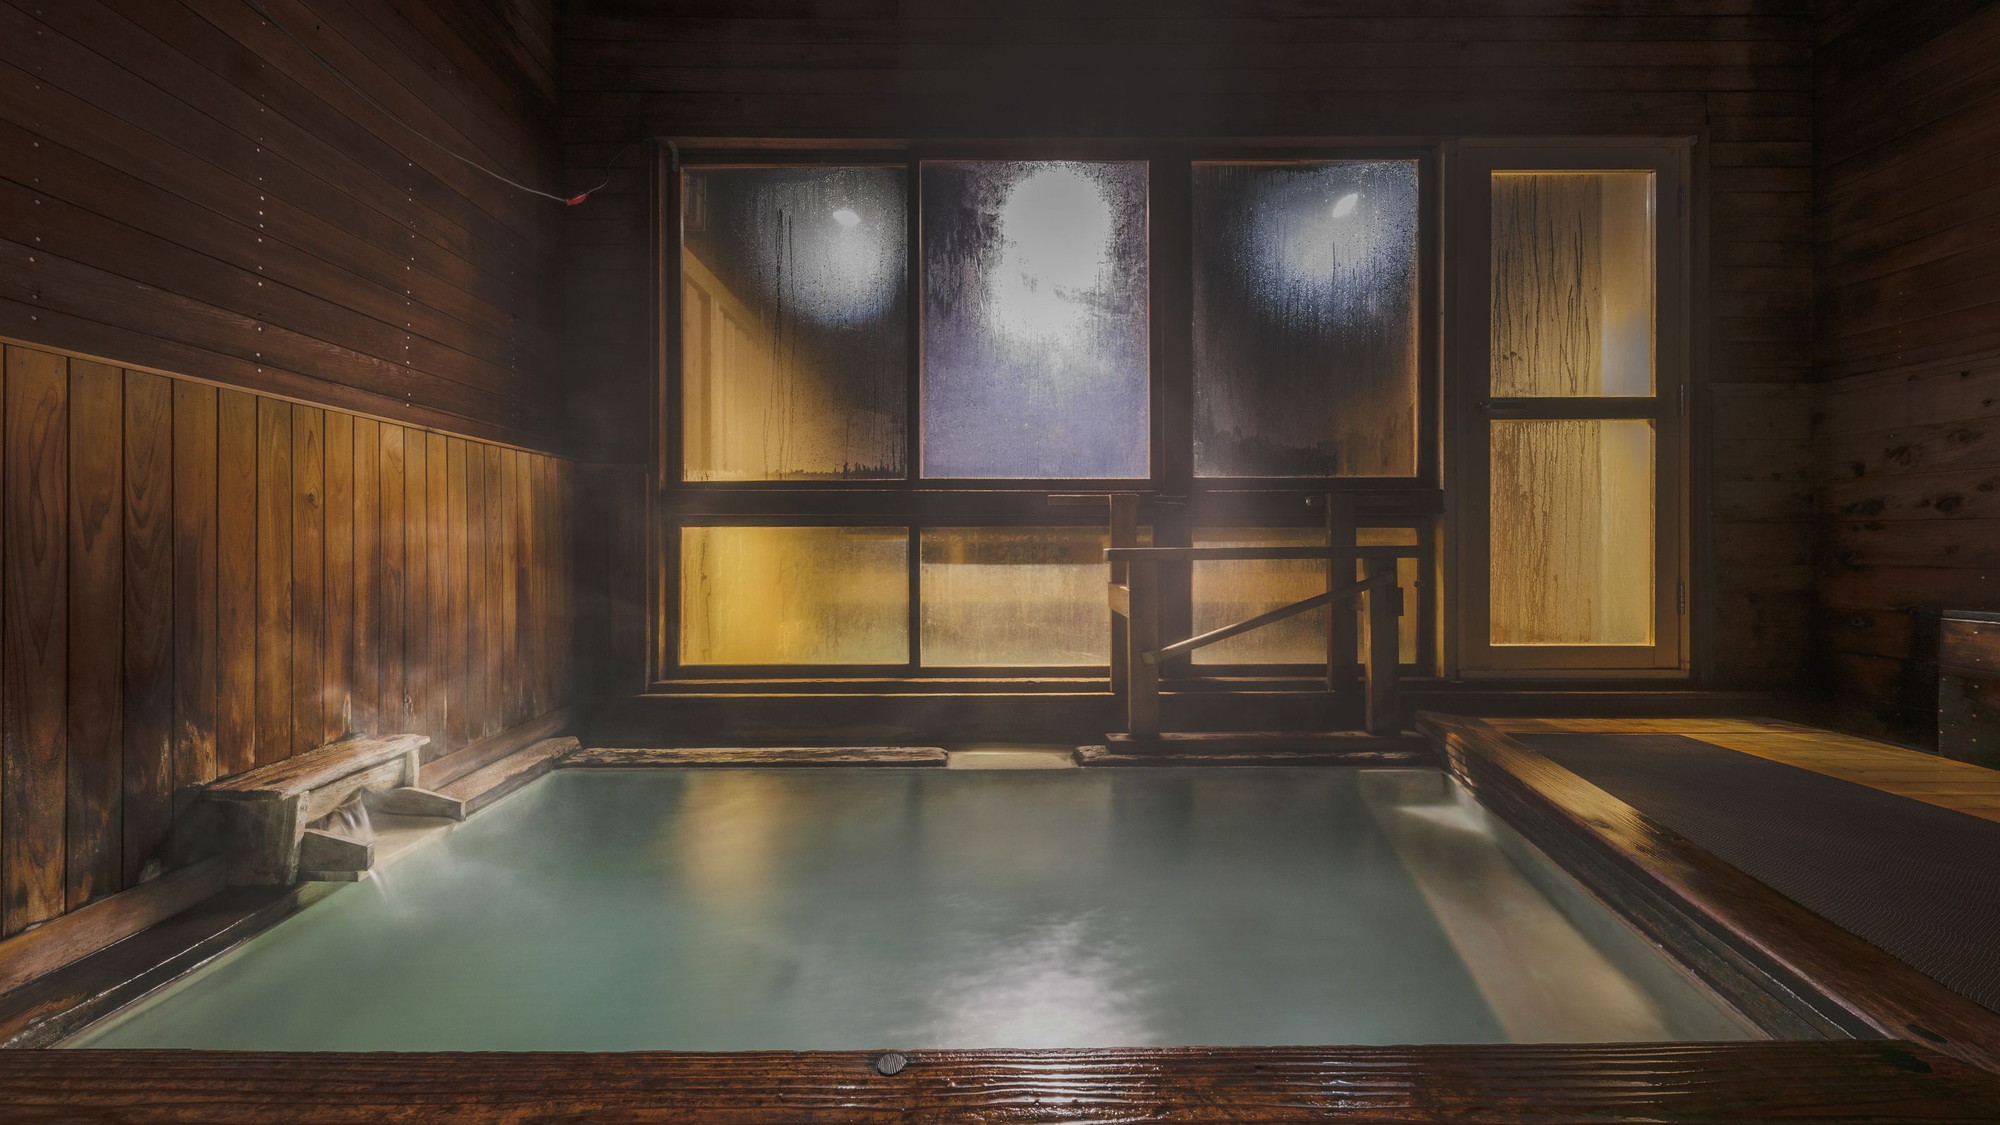 【やすらぎの湯】 全面木造りのまるで湯治場のような雰囲気の温泉浴場